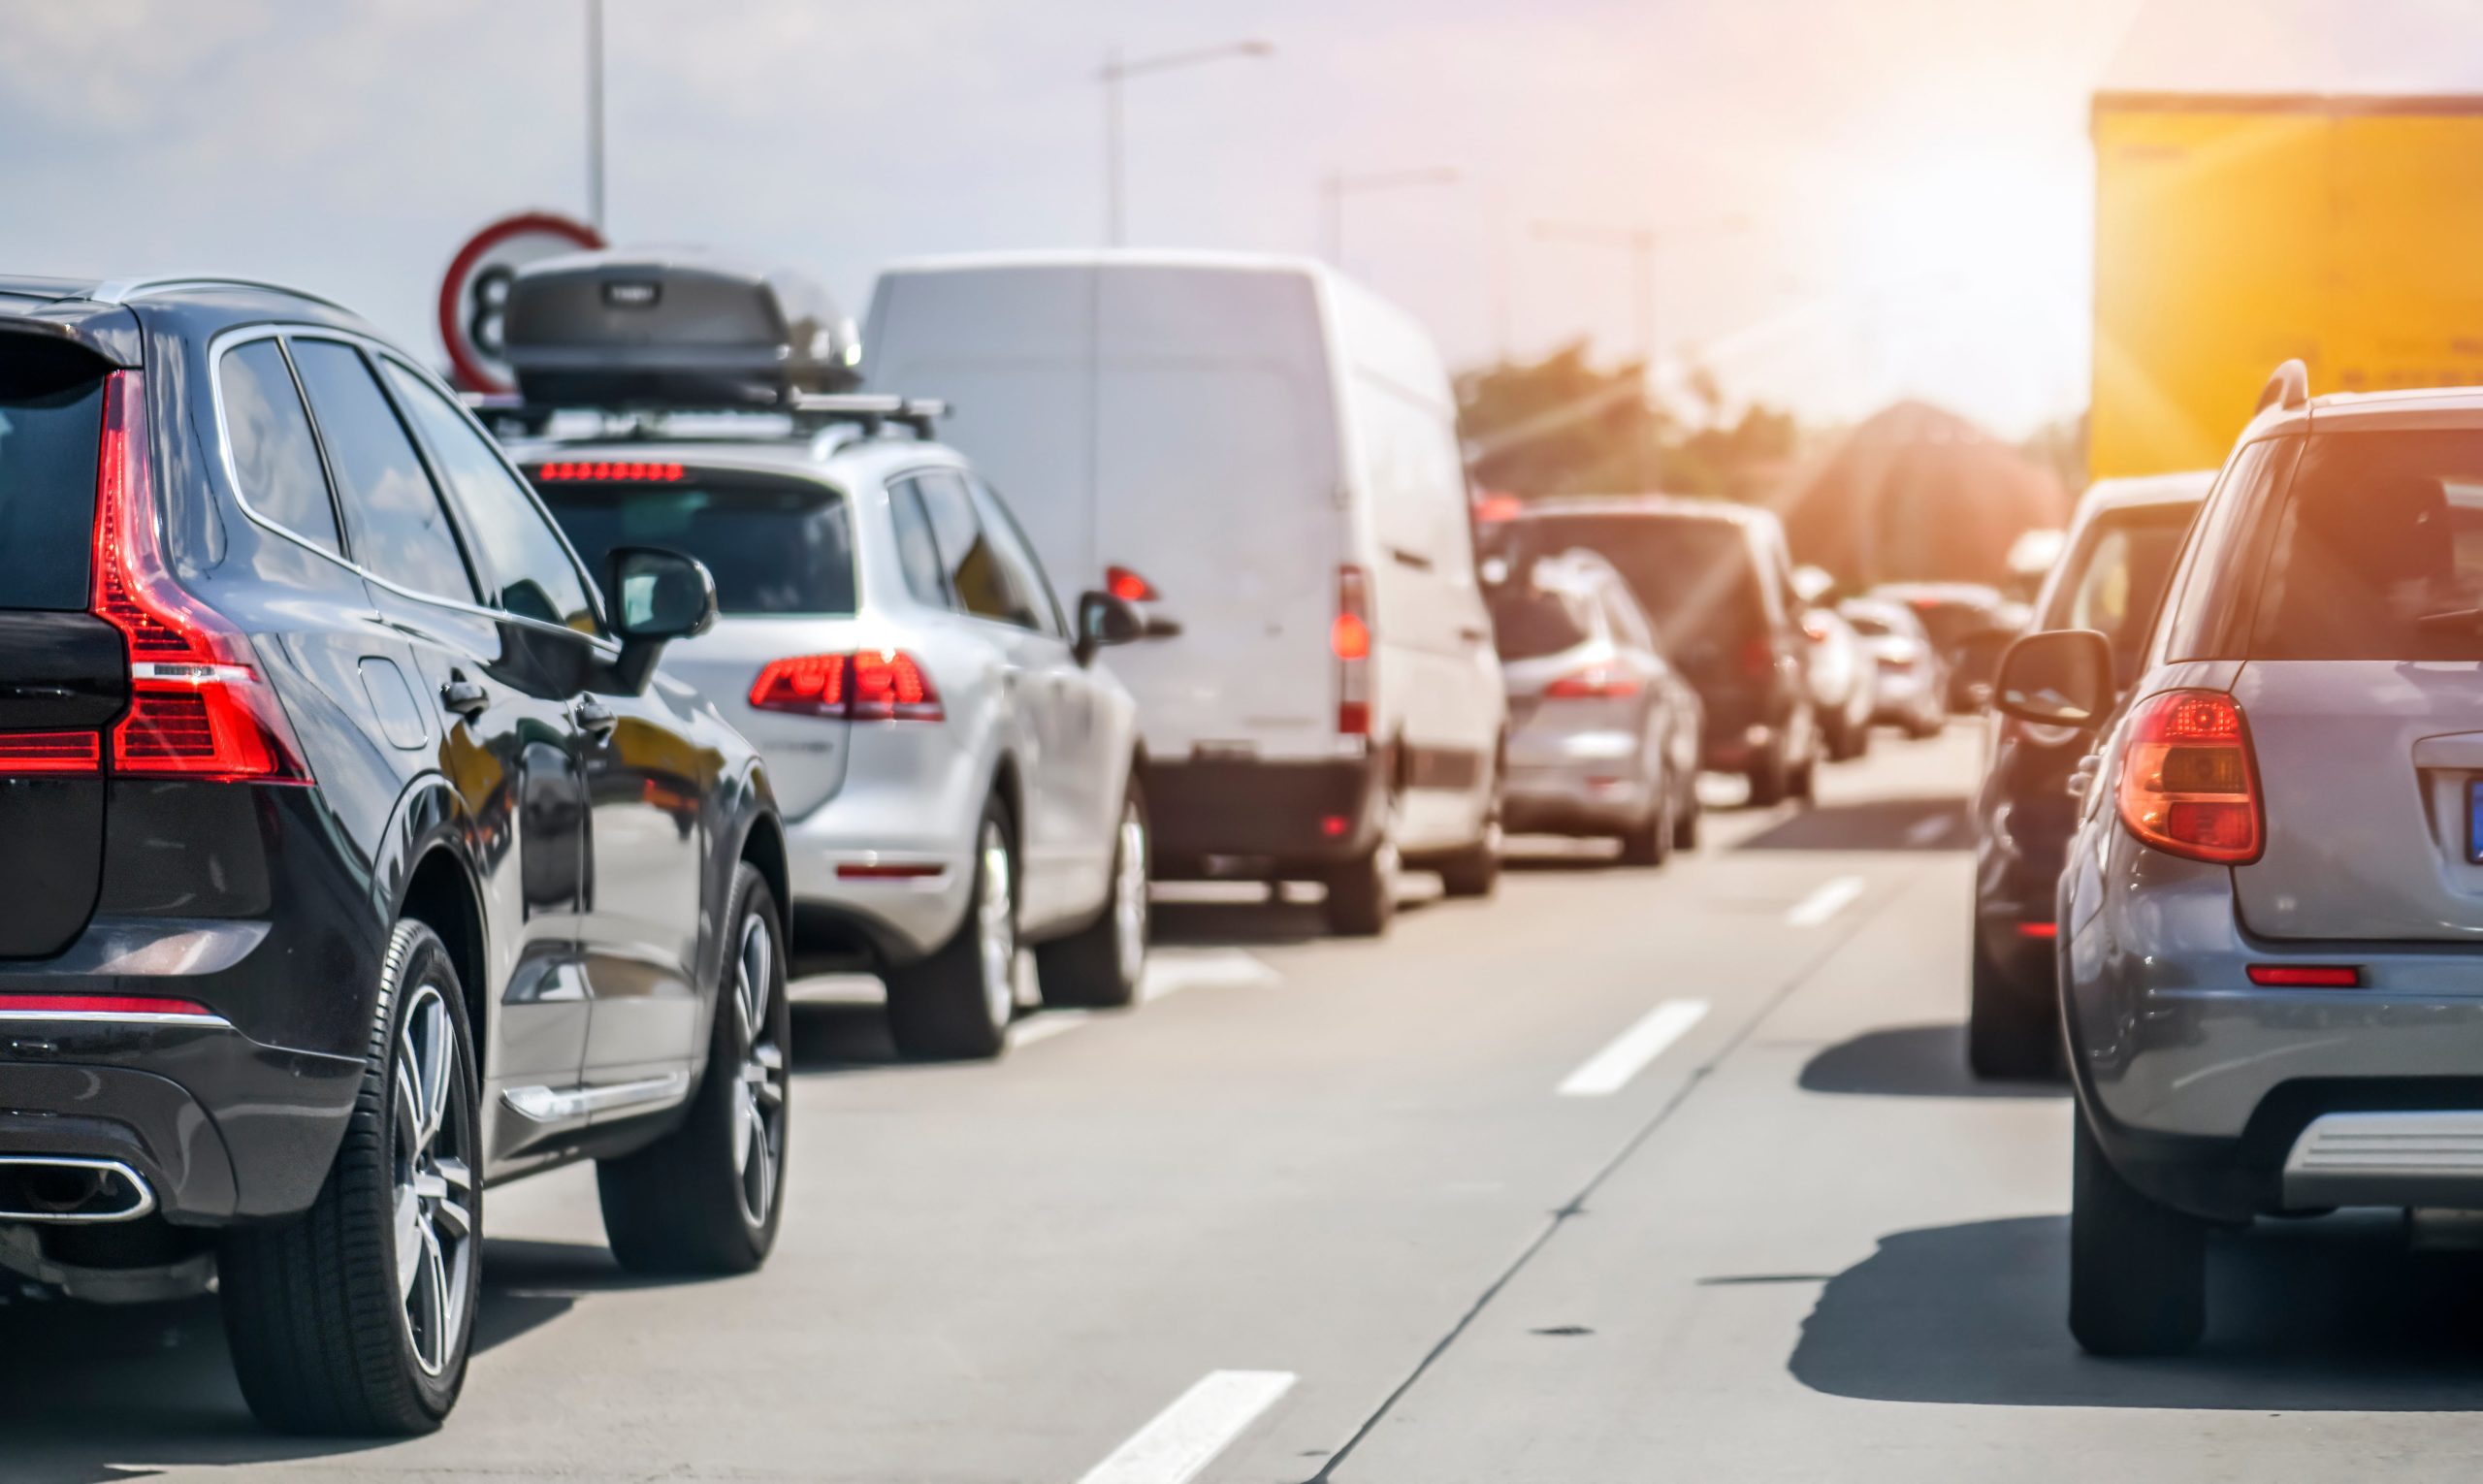 Las lesiones más comunes ocurren a causa de accidentes de tráfico